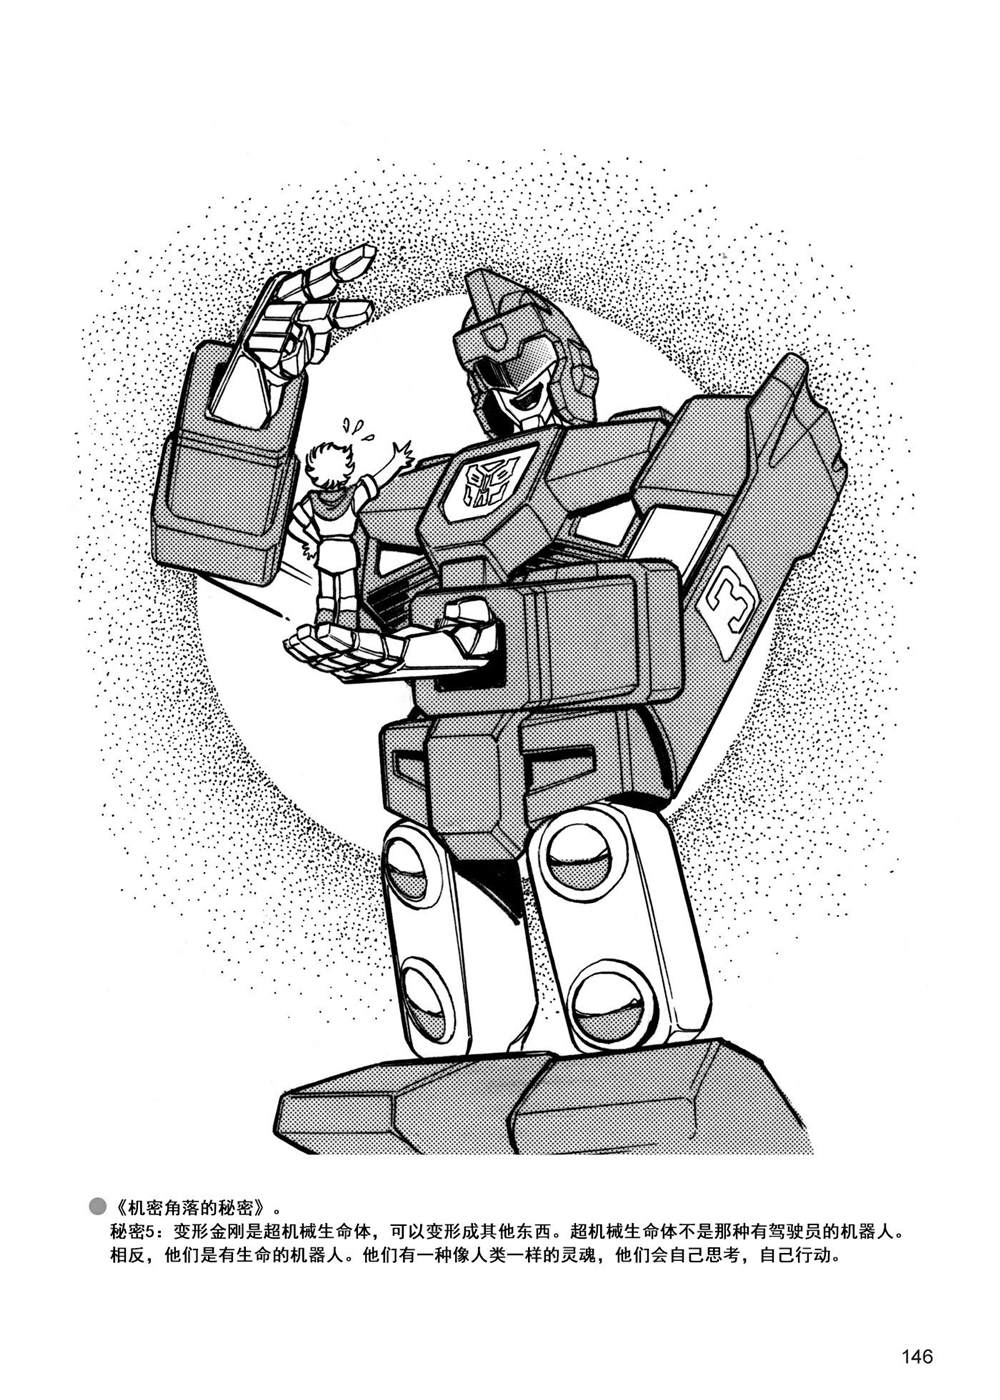 变形金刚日版G1杂志插画 - 战斗吧！超机械生命体变形金刚：胜利之斗争 - 3